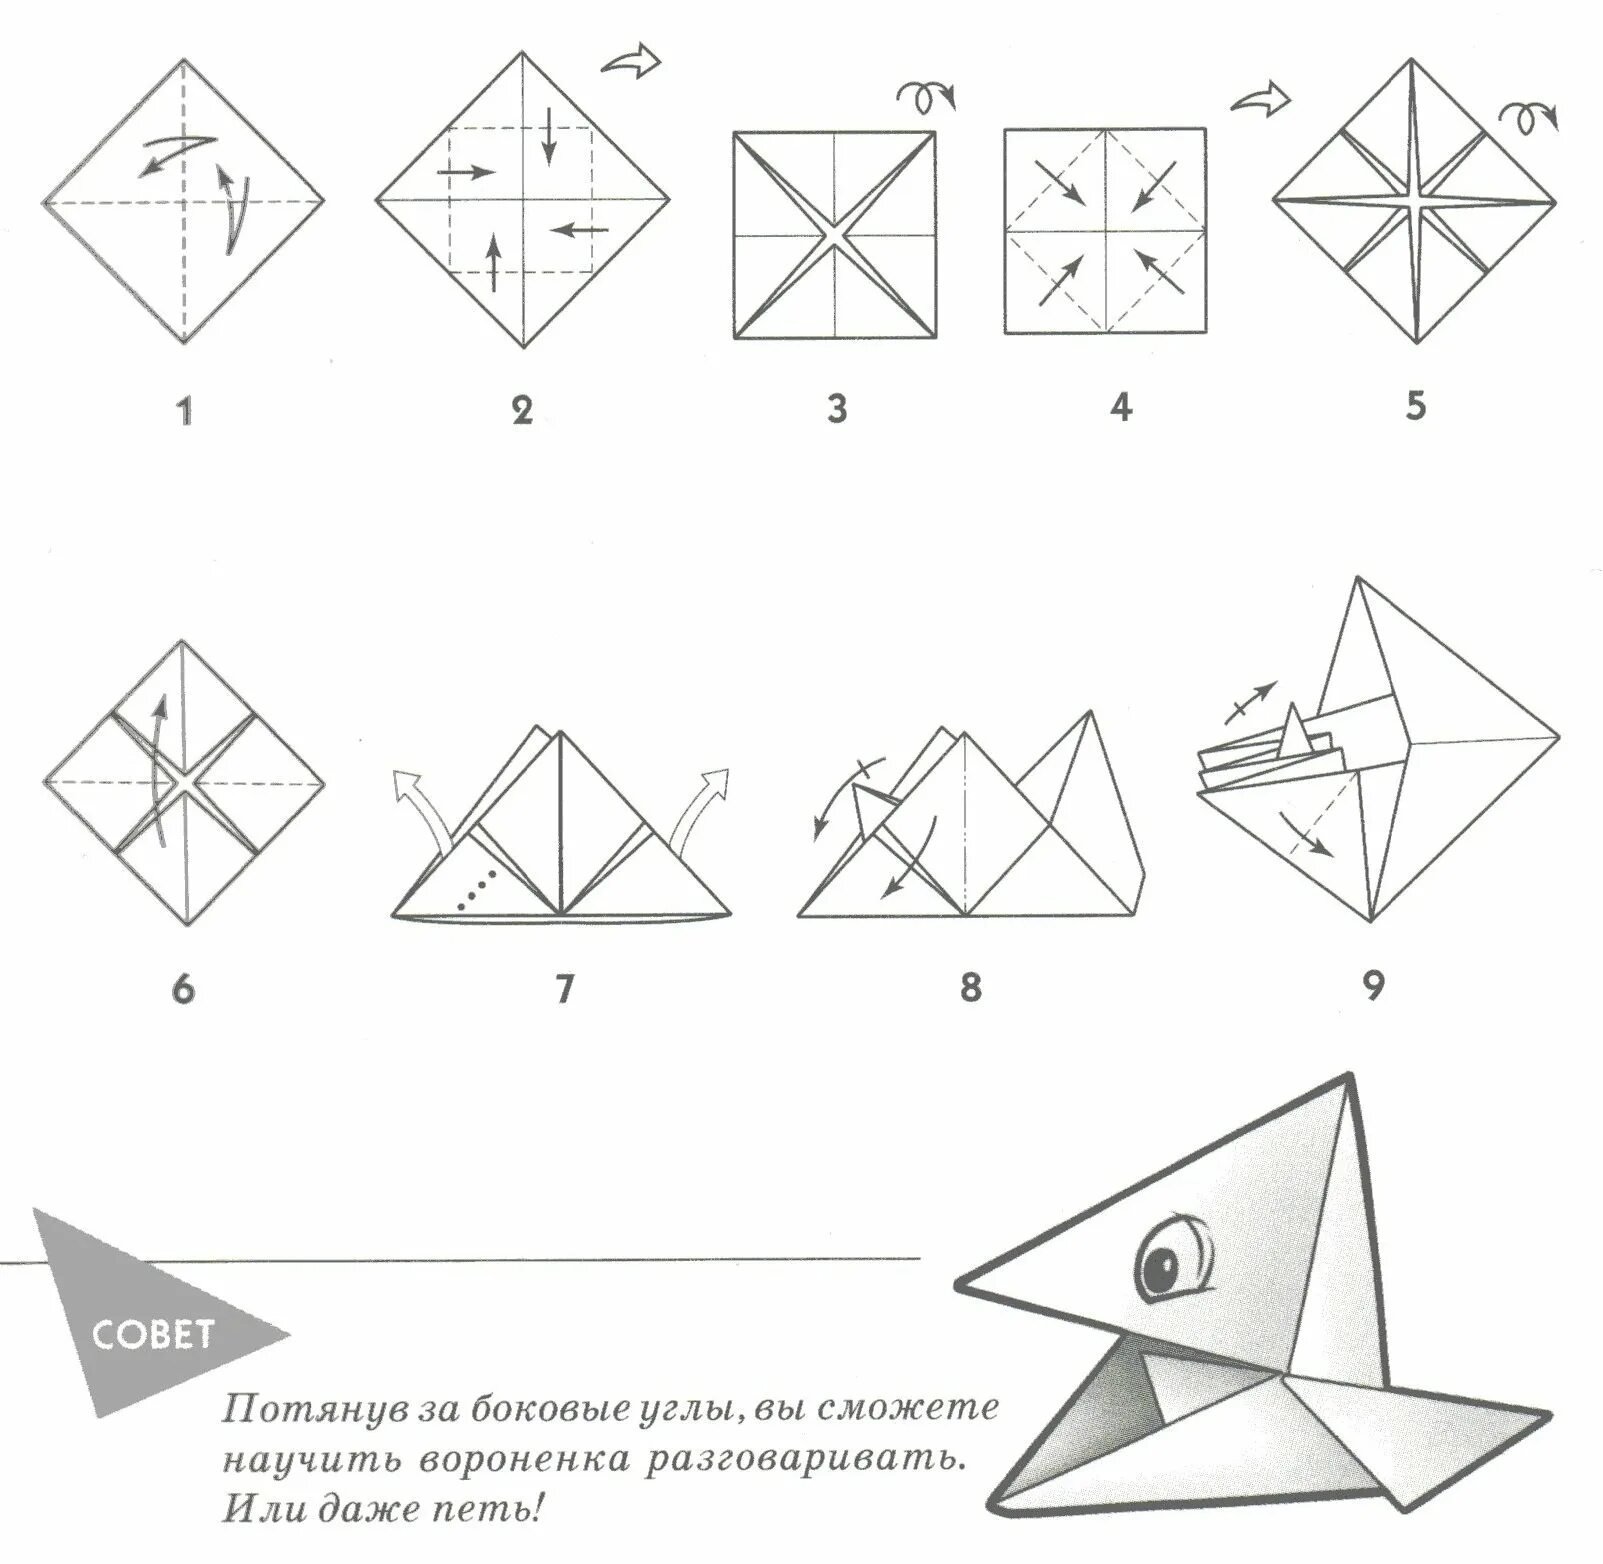 Складывать из бумаги. Поделка оригами из бумаги для начинающих пошагово. Оригами из бумаги для начинающих схемы пошагово. Поделки из бумаги схема складывания. Оригами из бумаги без клея схемы.